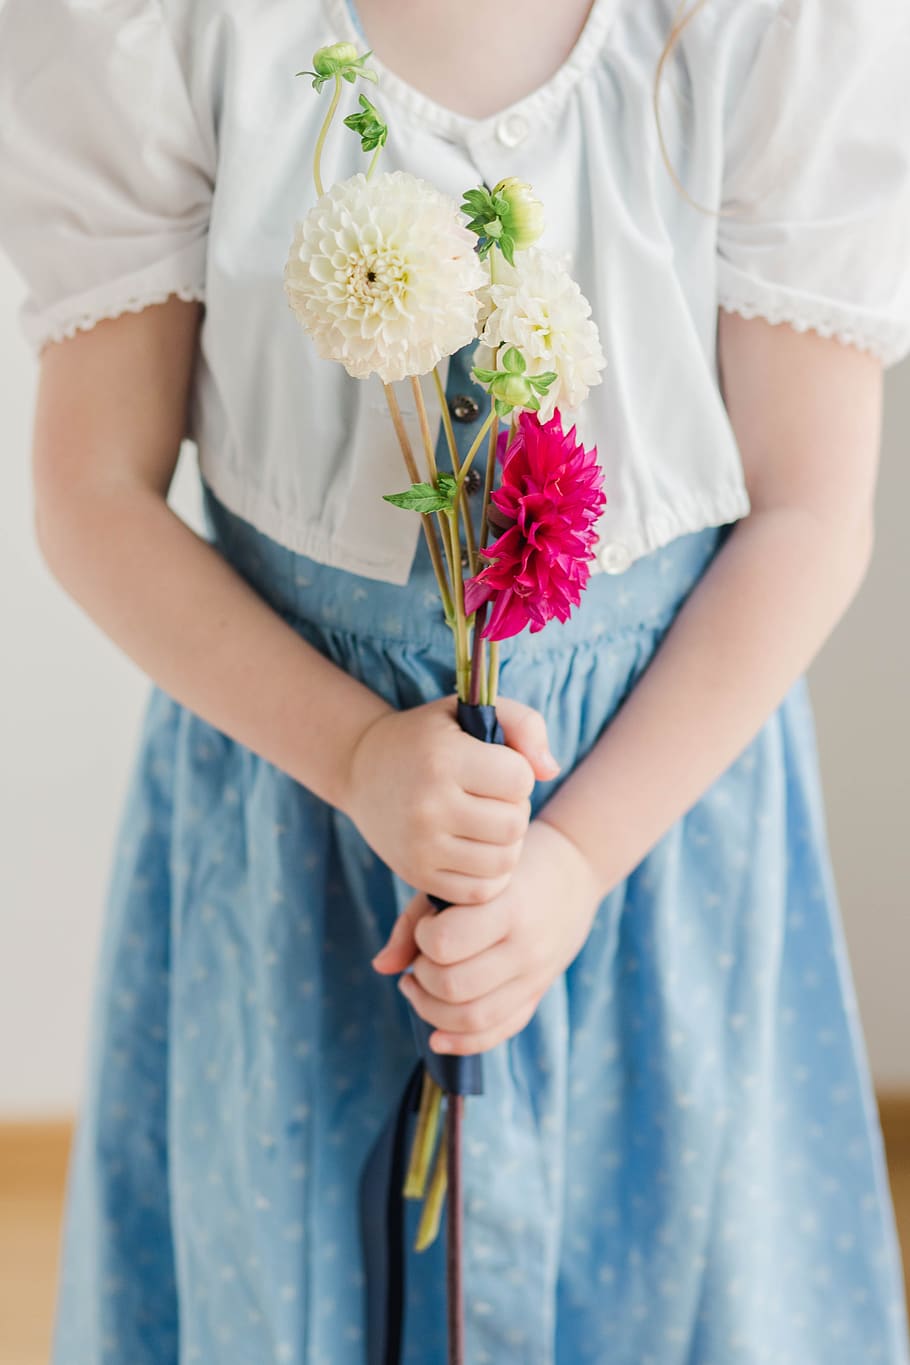 gaun Austria, dahlia, gadis memegang bunga, merah, putih, anak, dirndl, potret, bunga, gaun biru